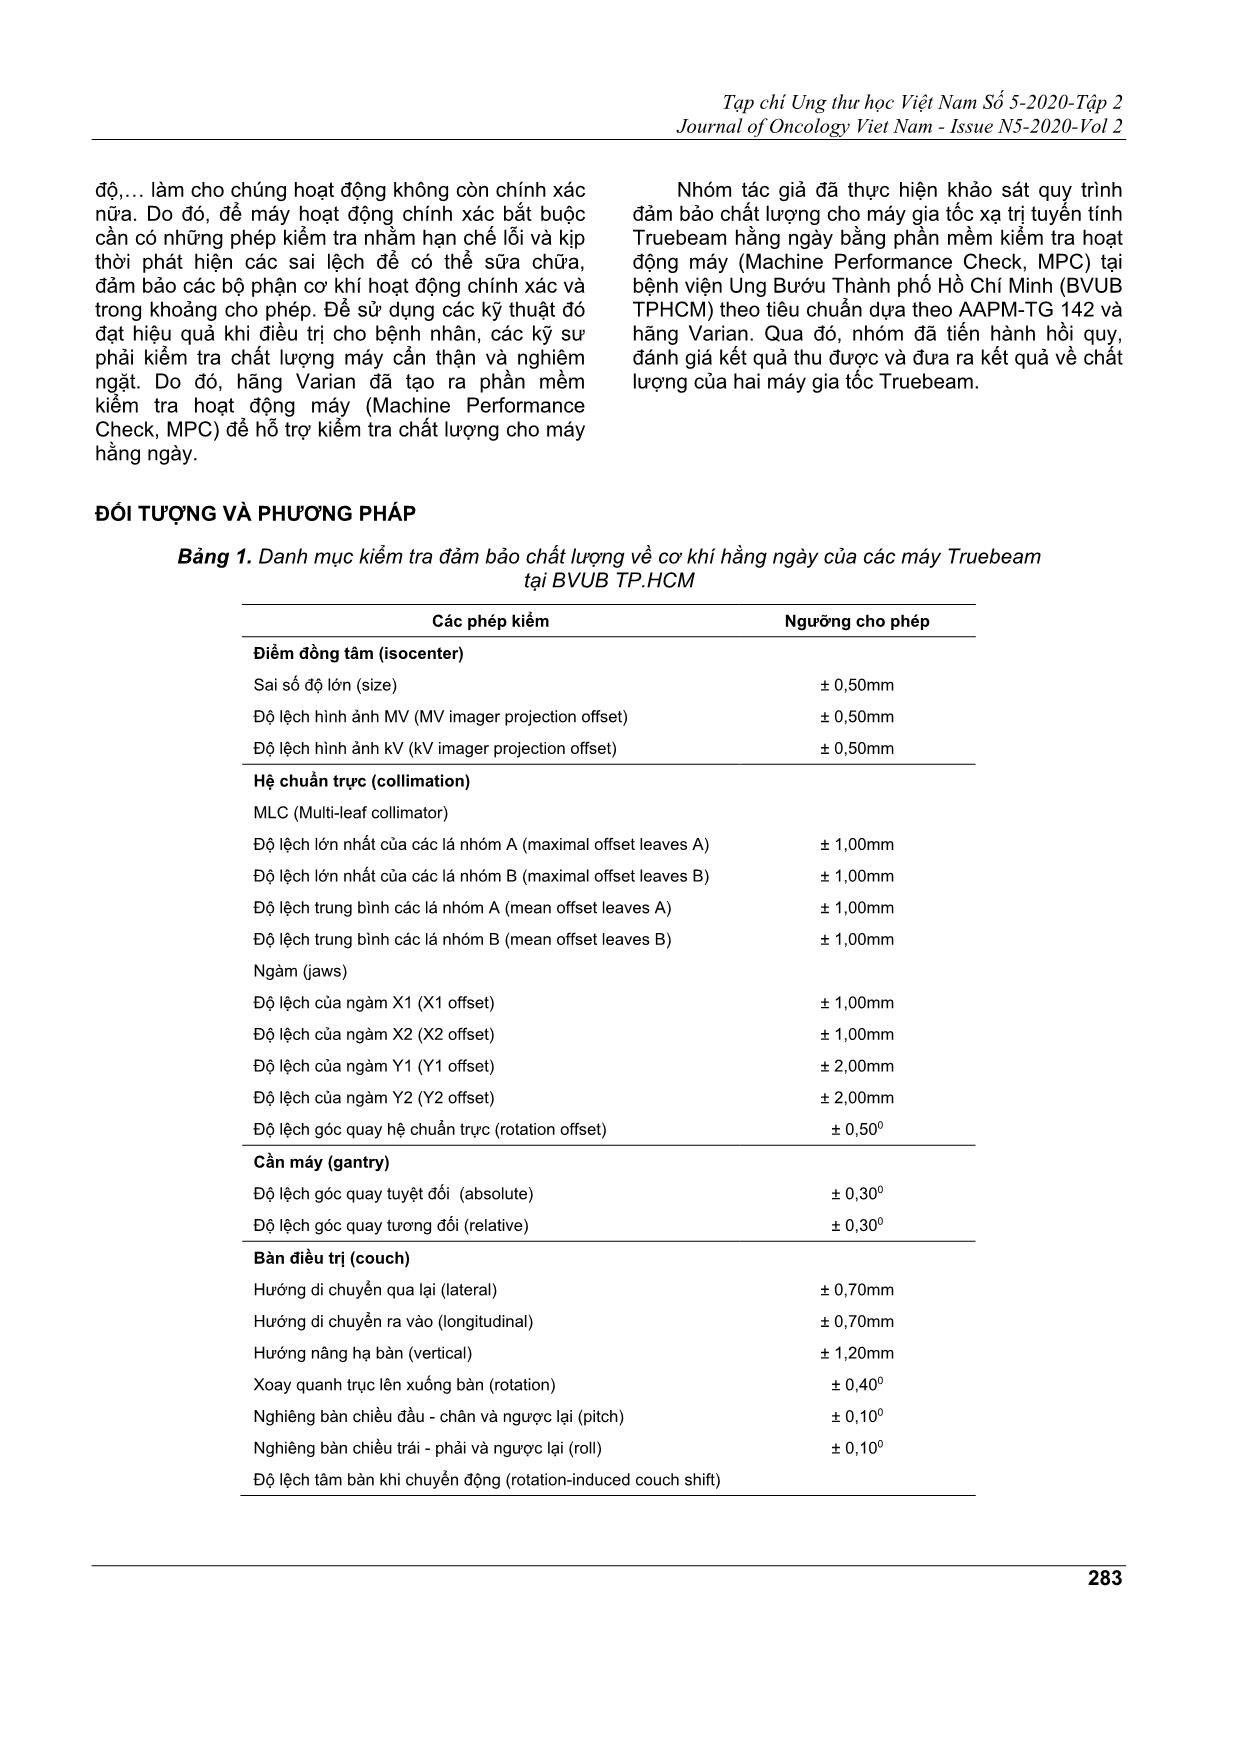 Đánh giá quy trình bảo đảm chất lượng máy xạ trị gia tốc truebeam hằng ngày tại bệnh viện ung bướu thành phố Hồ Chí Minh bằng phần mềm kiểm tra chất lượng máy (mpc) trang 2